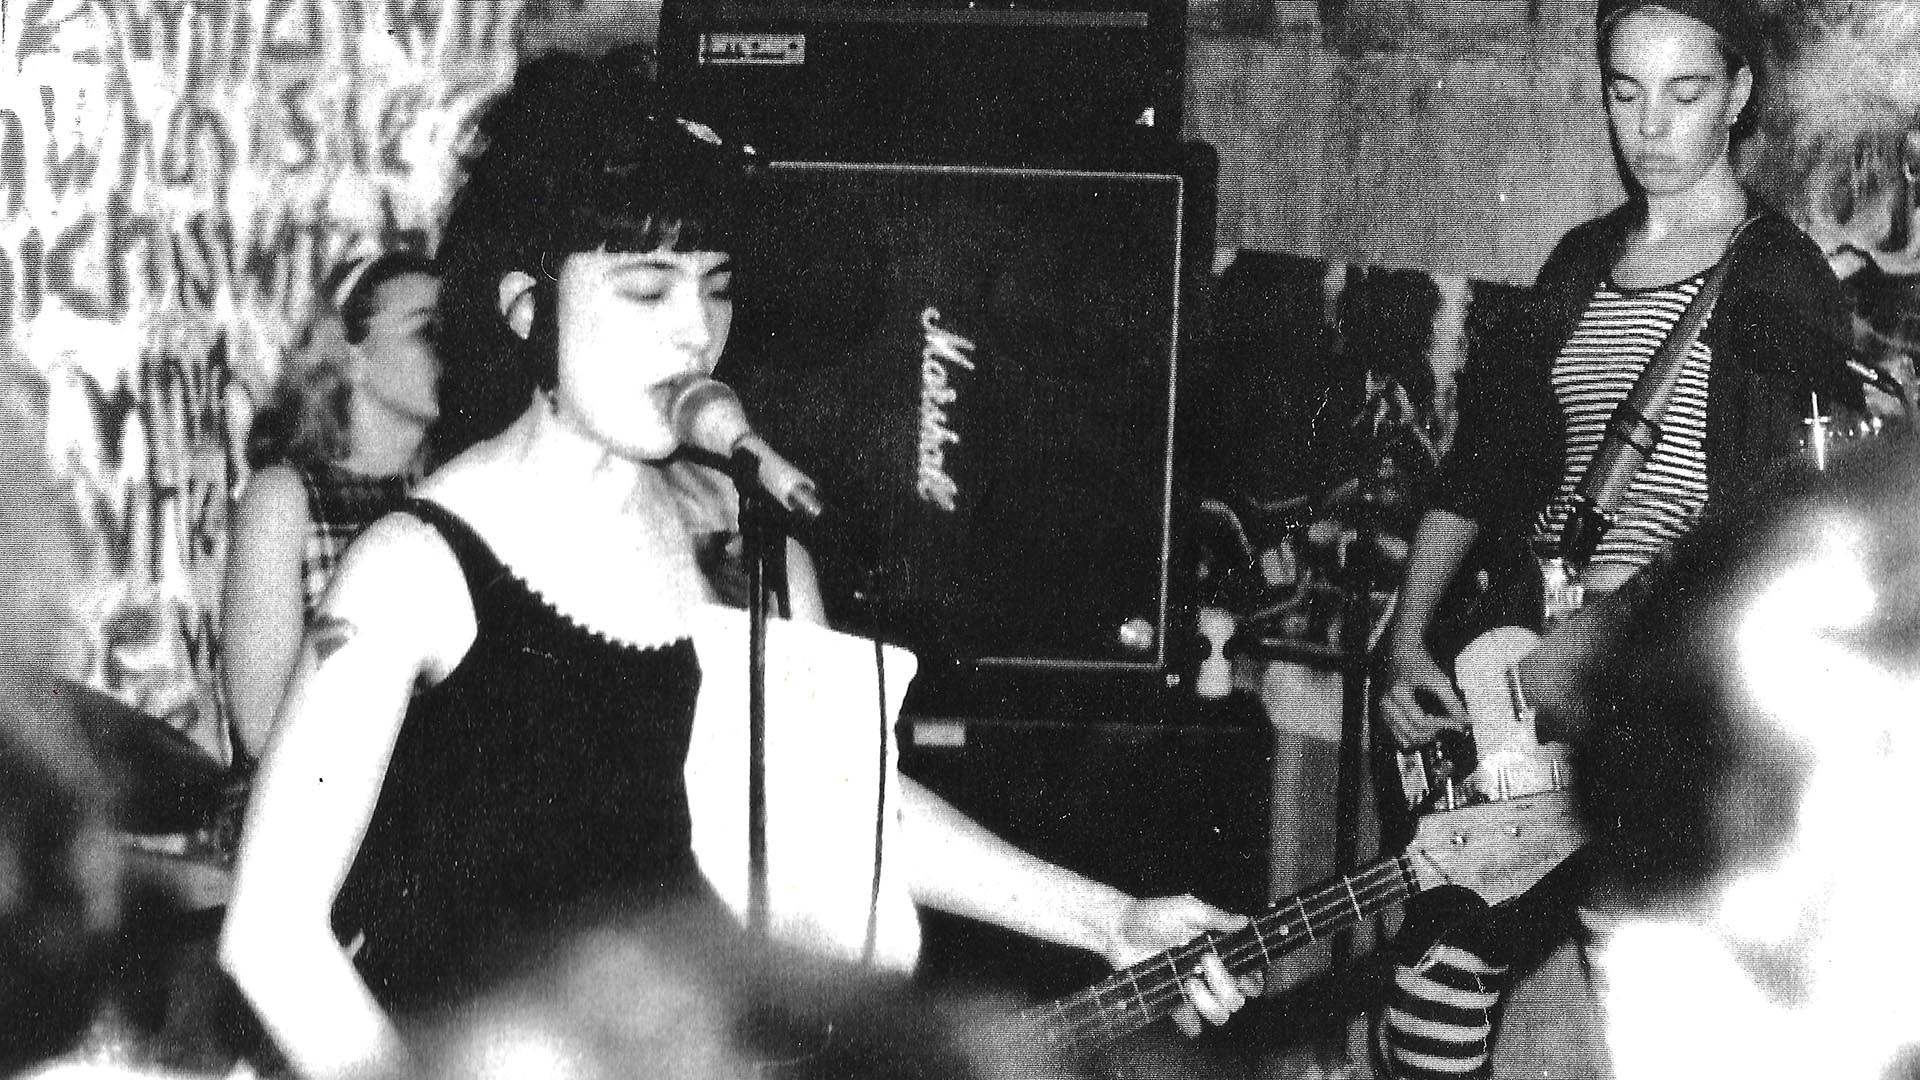 Early Bikini Kill gig in 1990